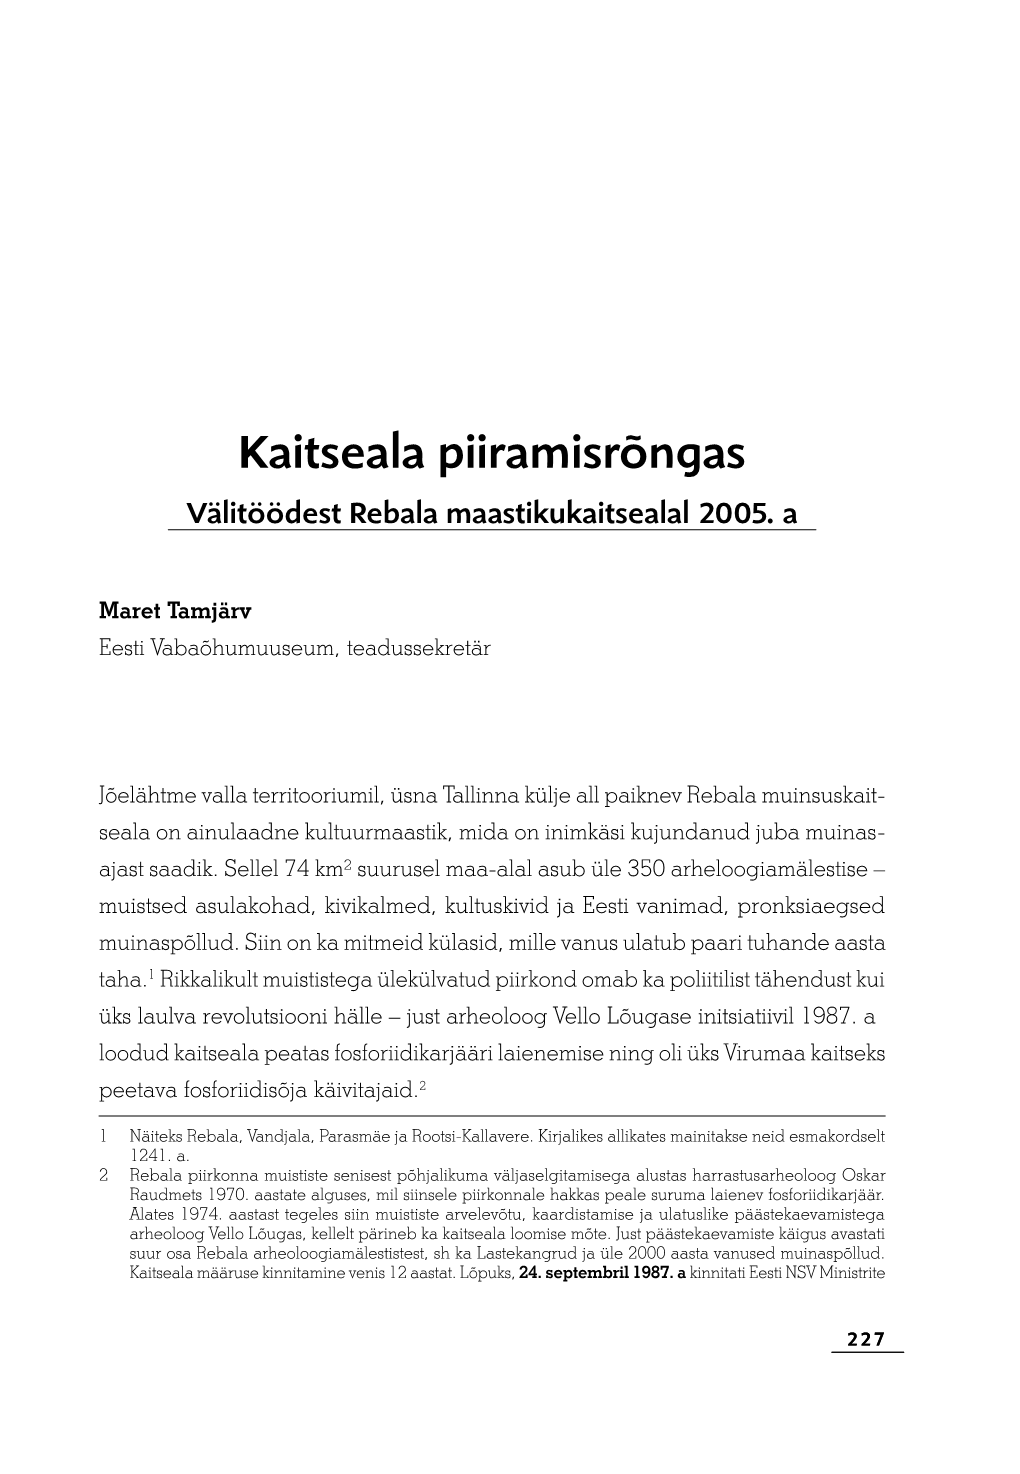 Kaitseala Piiramisrõngas. Välitöödest Rebala Maastikukaitsealal 2005. A